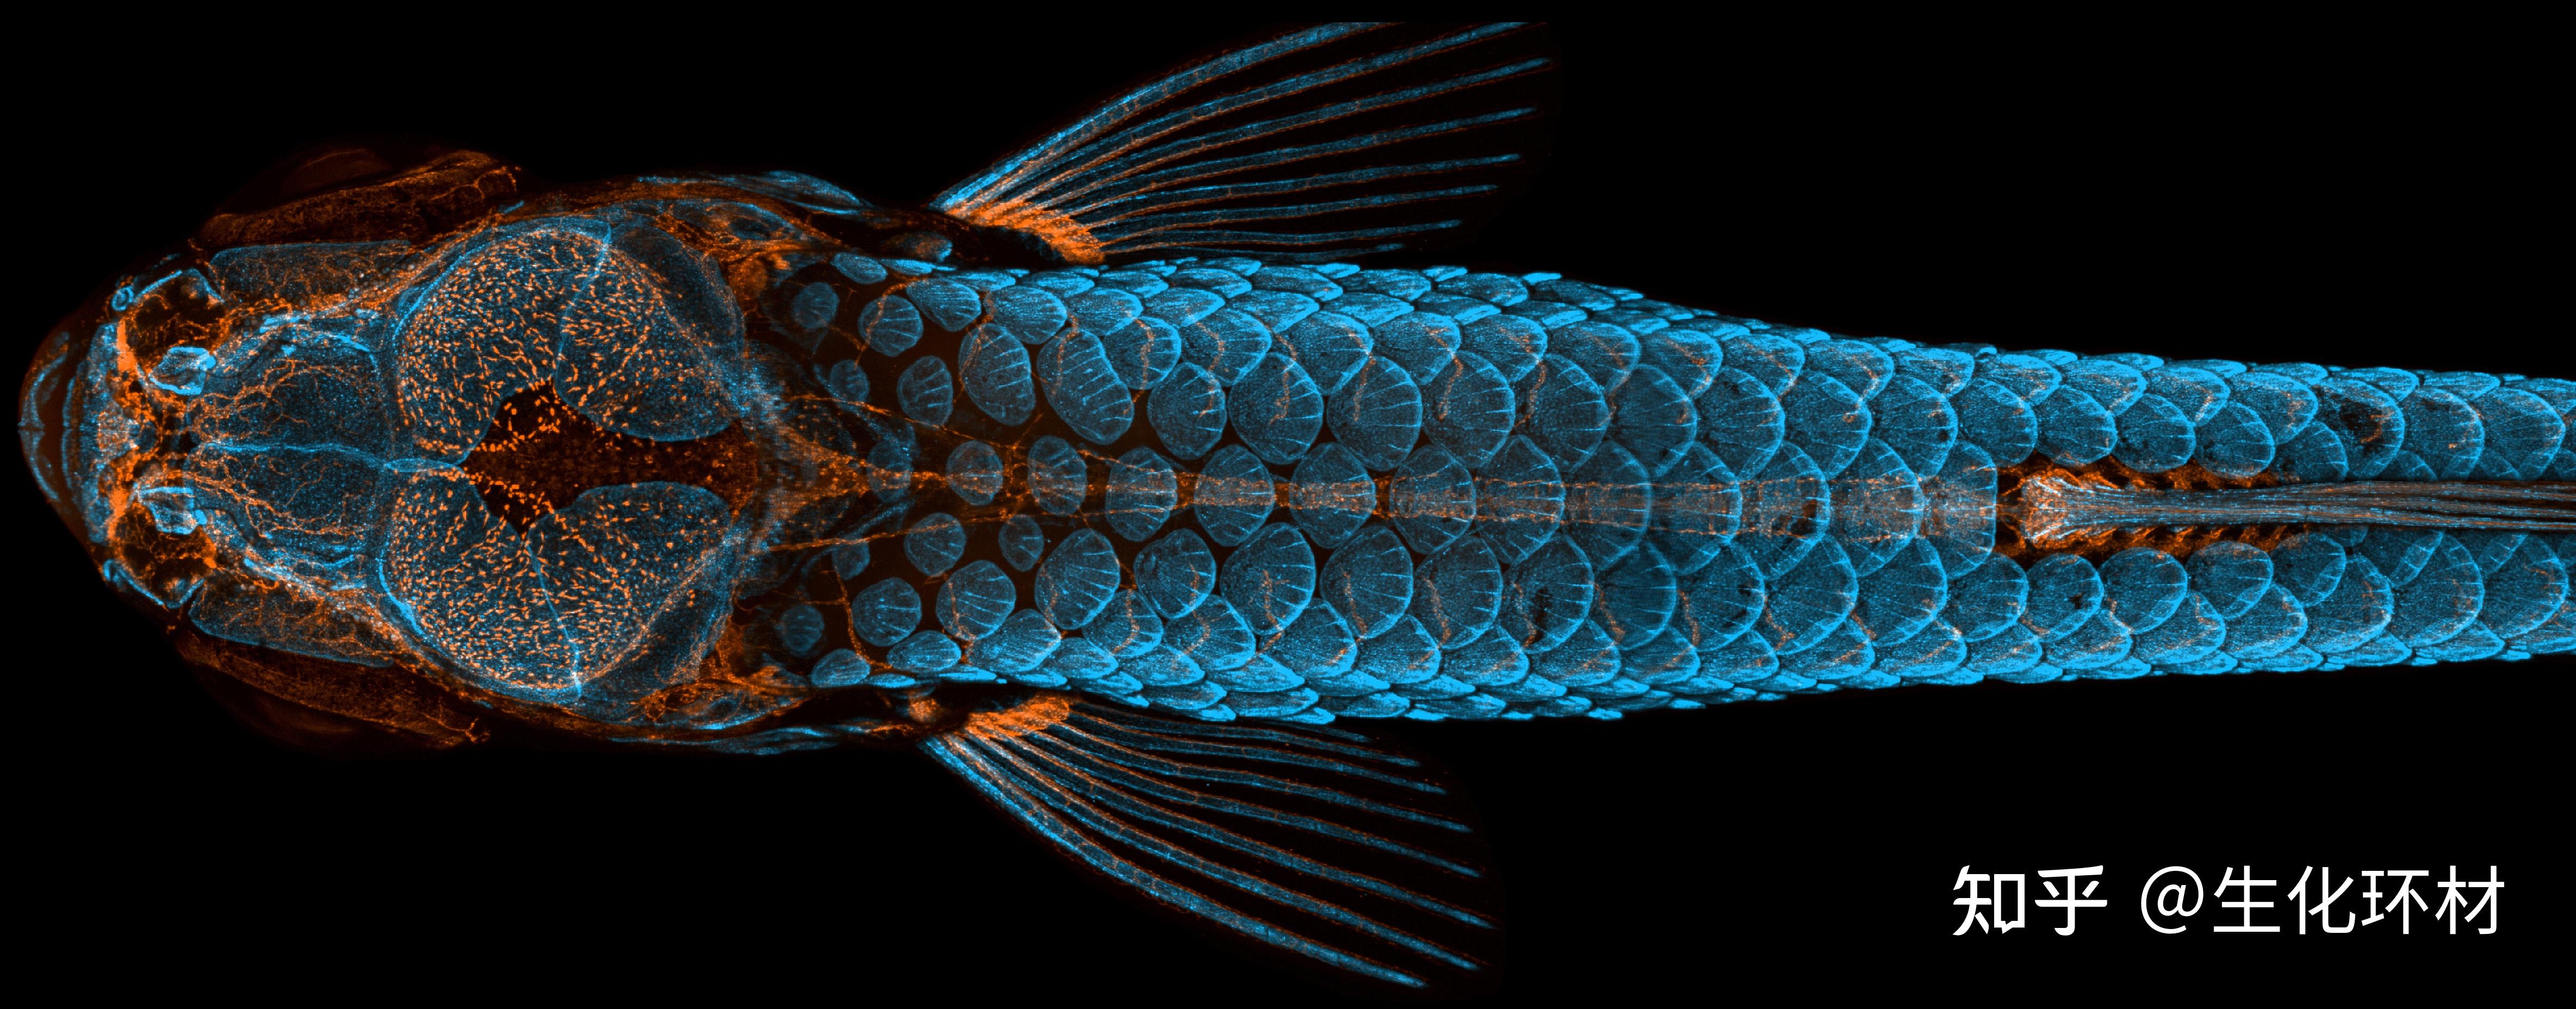 每周科学图片第1期共聚焦显微镜下的斑马鱼